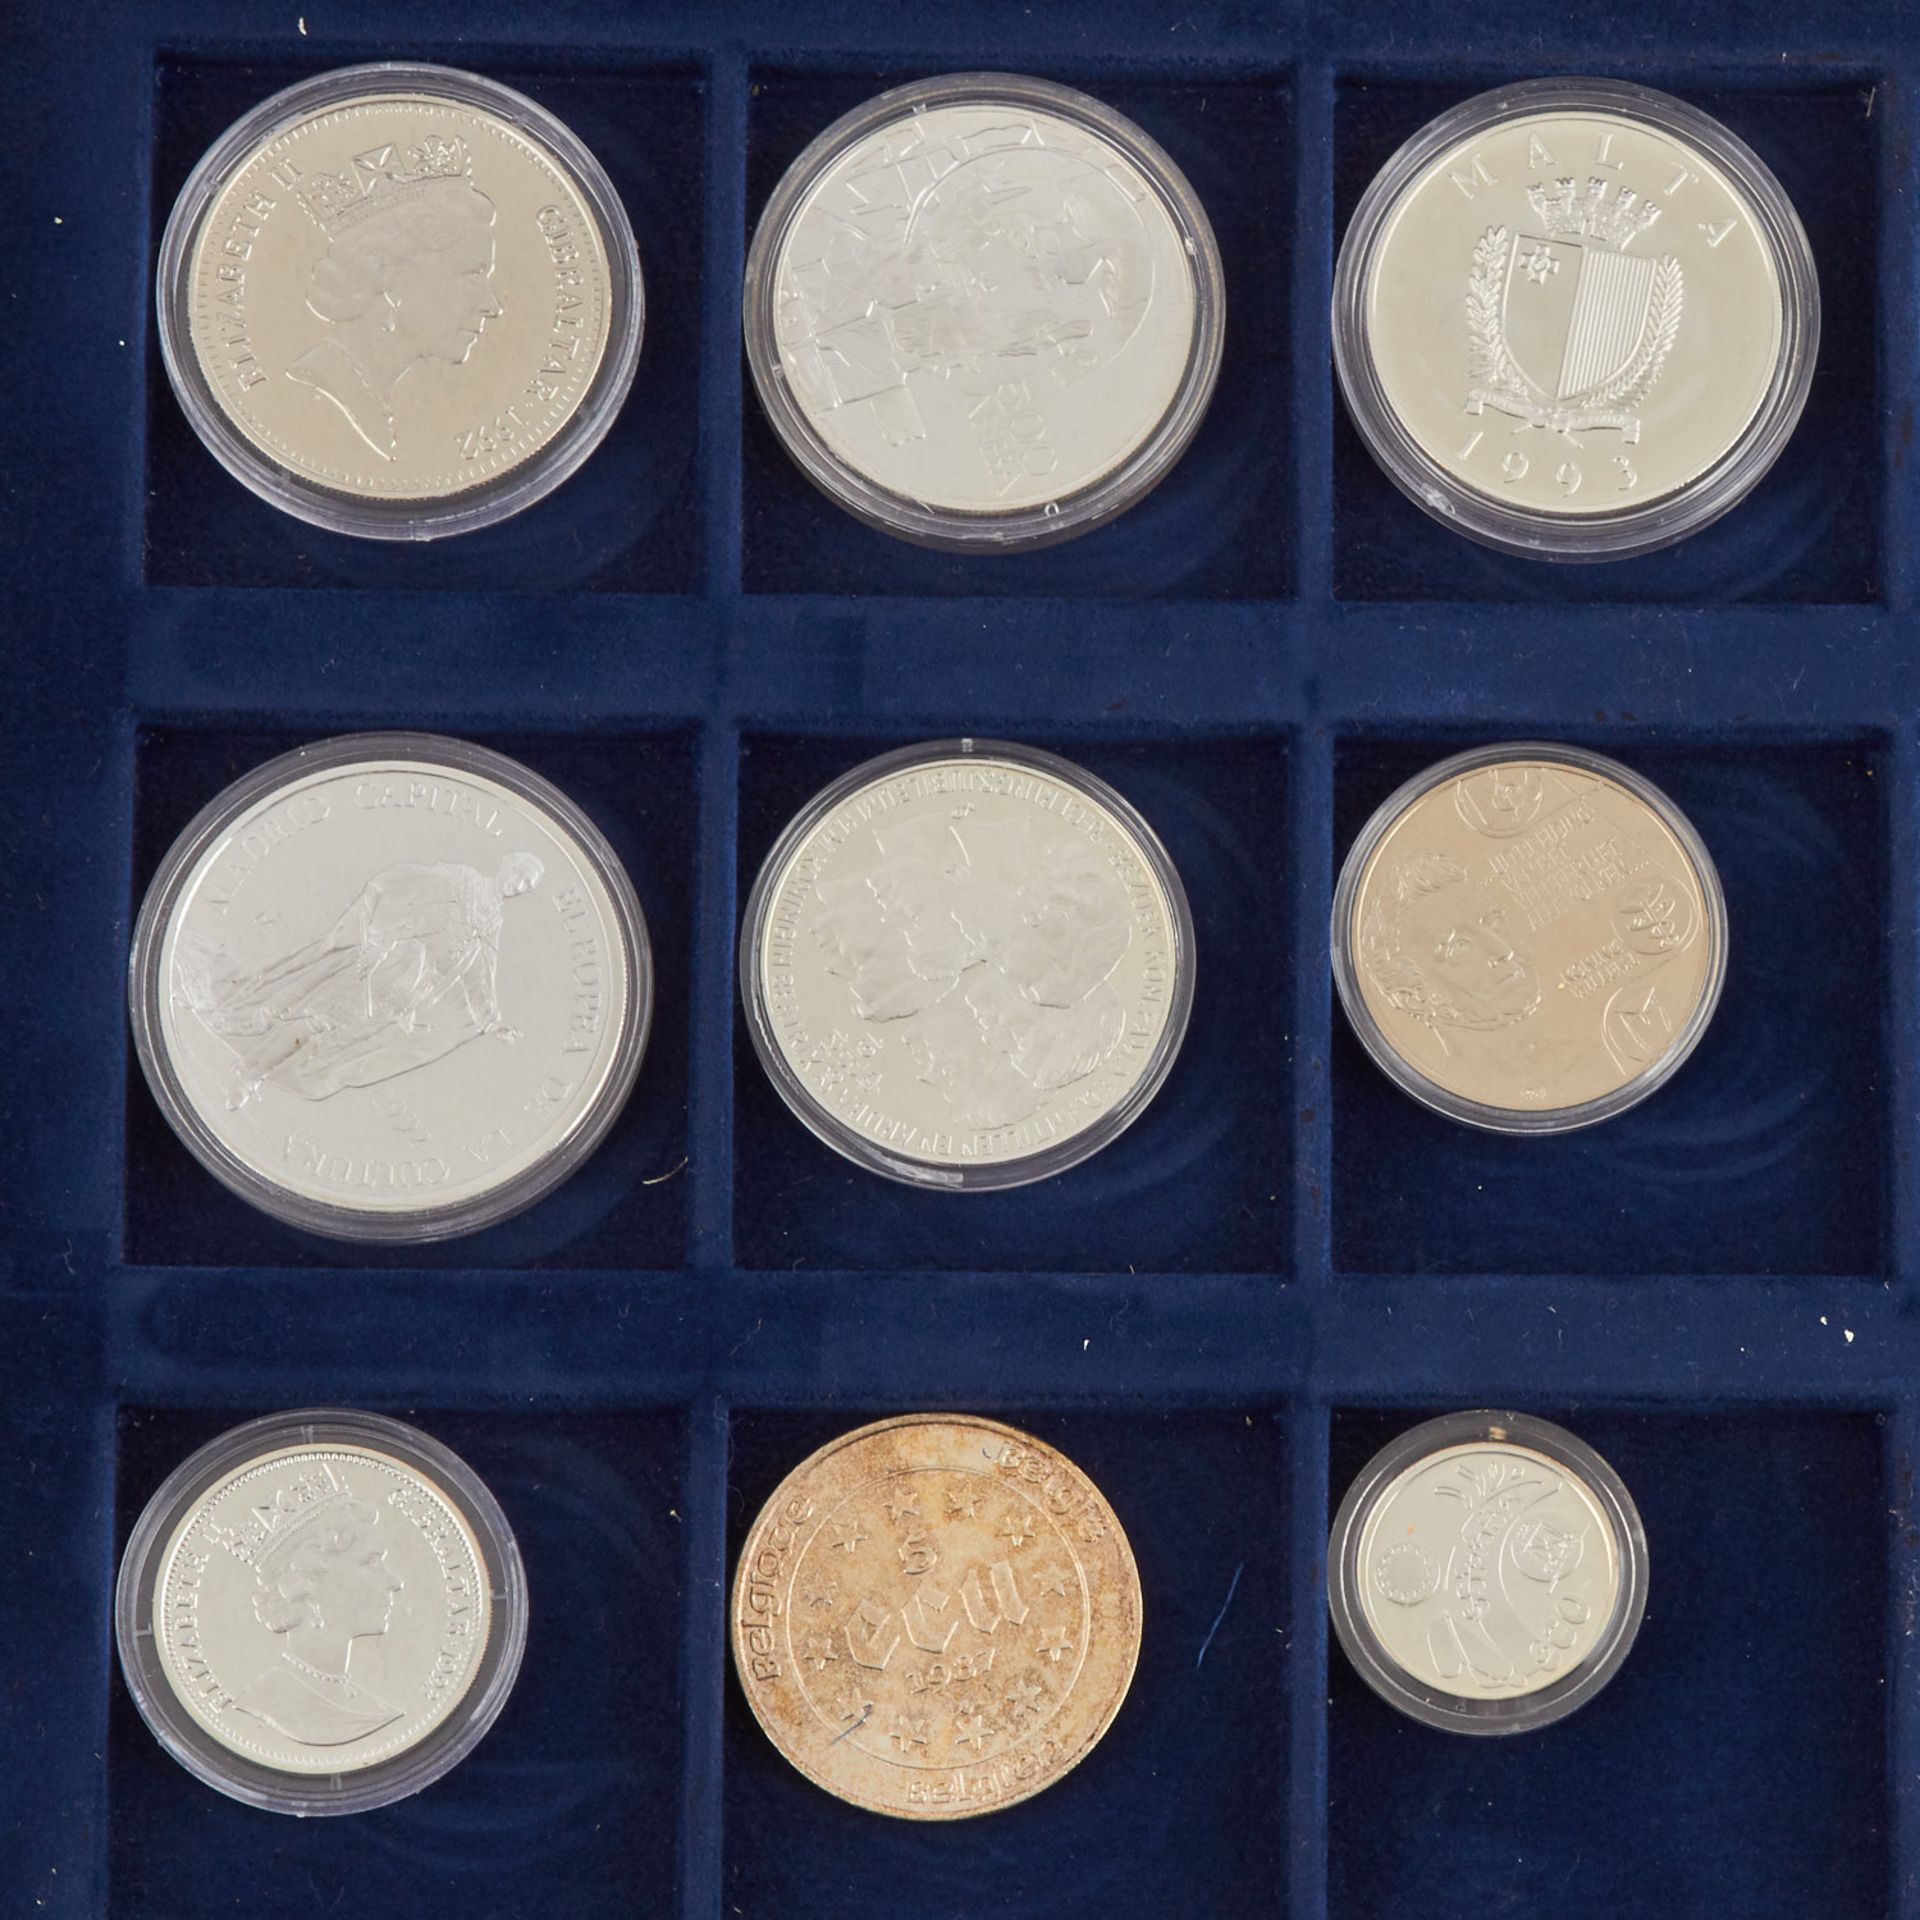 ECU Sammlung mit 33 Münzen in Samtschatulle,darunter u.a. Bimetall Gold/Silber Andorra 20 Dinars - Bild 4 aus 7